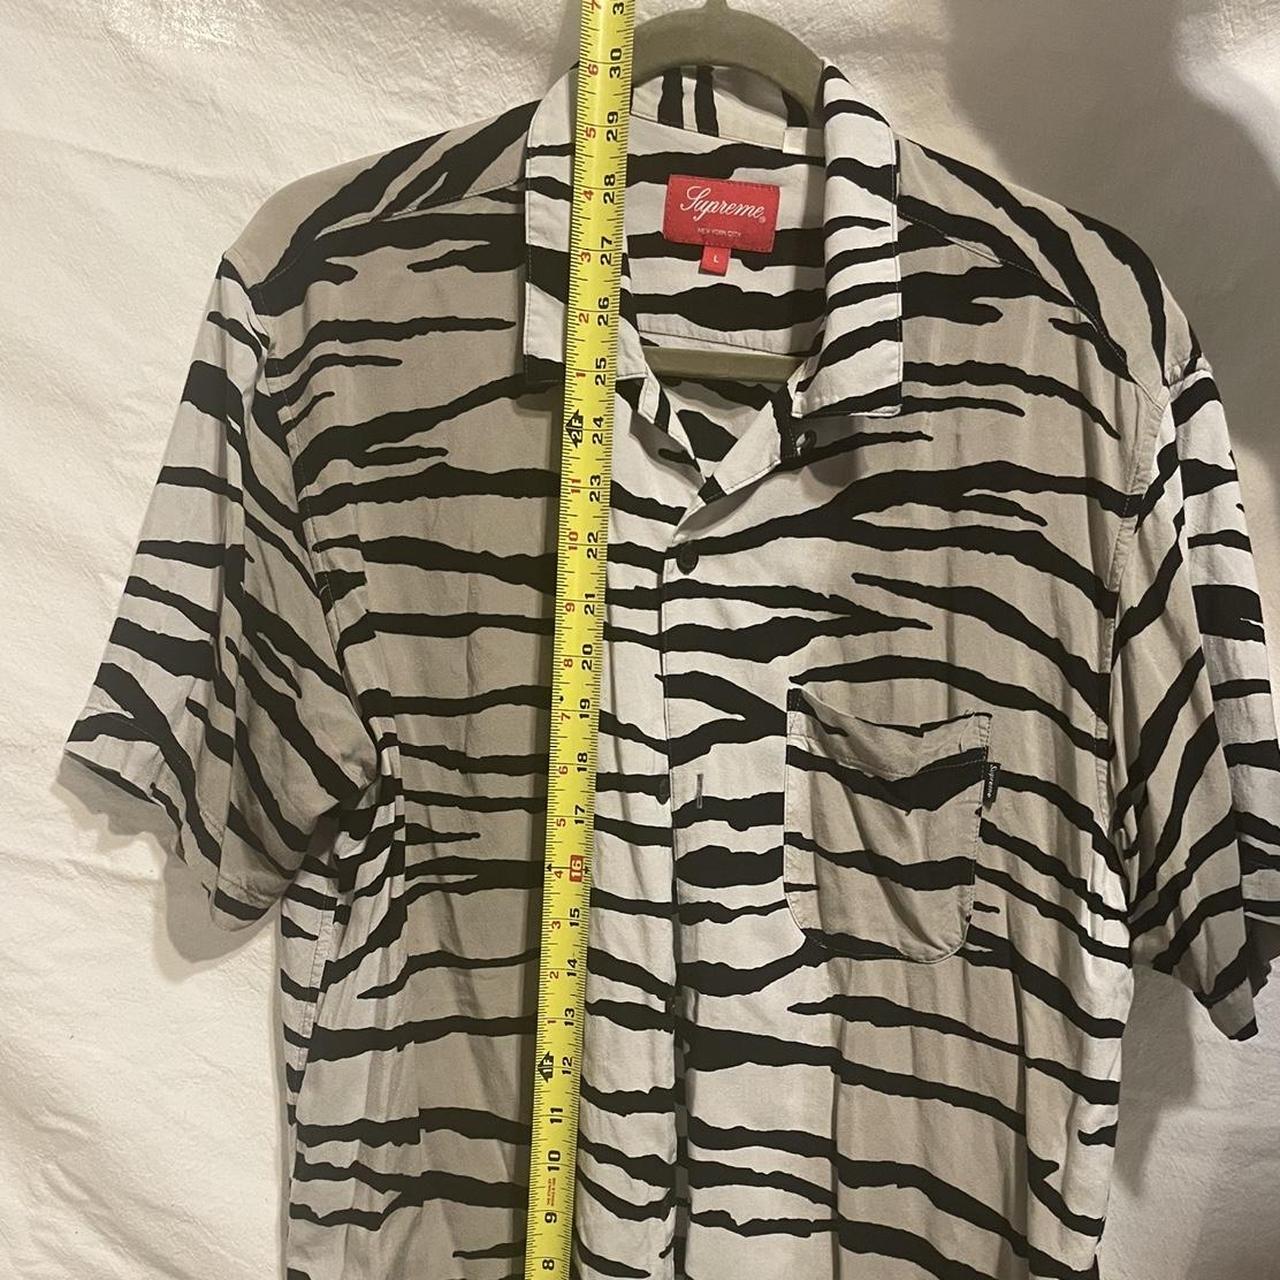 Supreme 2018 SS Tiger Stripe Rayon Shirt. Perfect... - Depop